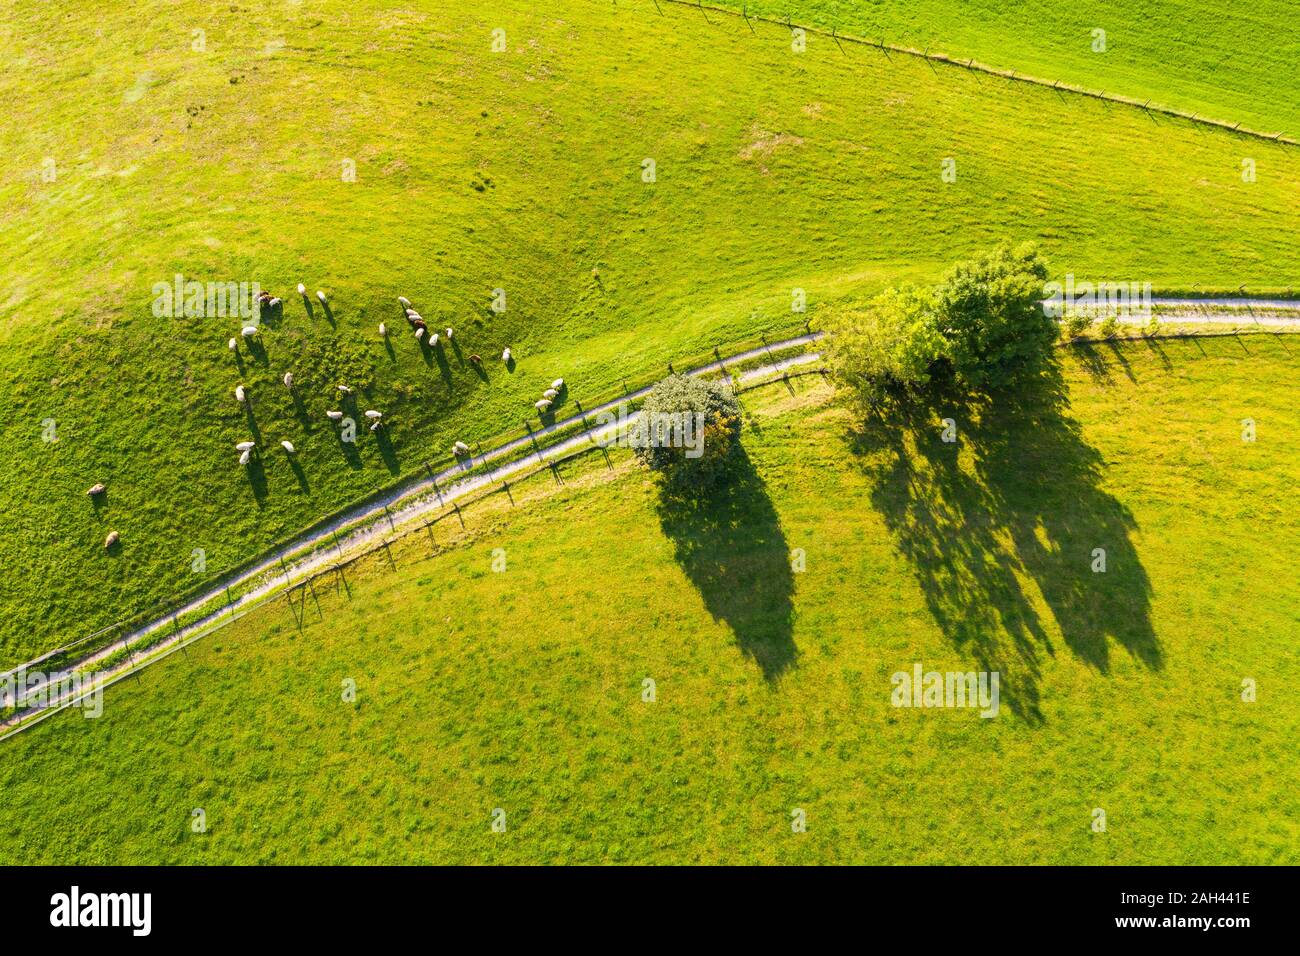 Alemania, Baviera, Beuerberg, vista aérea del rebaño de ovejas que pastan en pastos junto a carretera rural Foto de stock